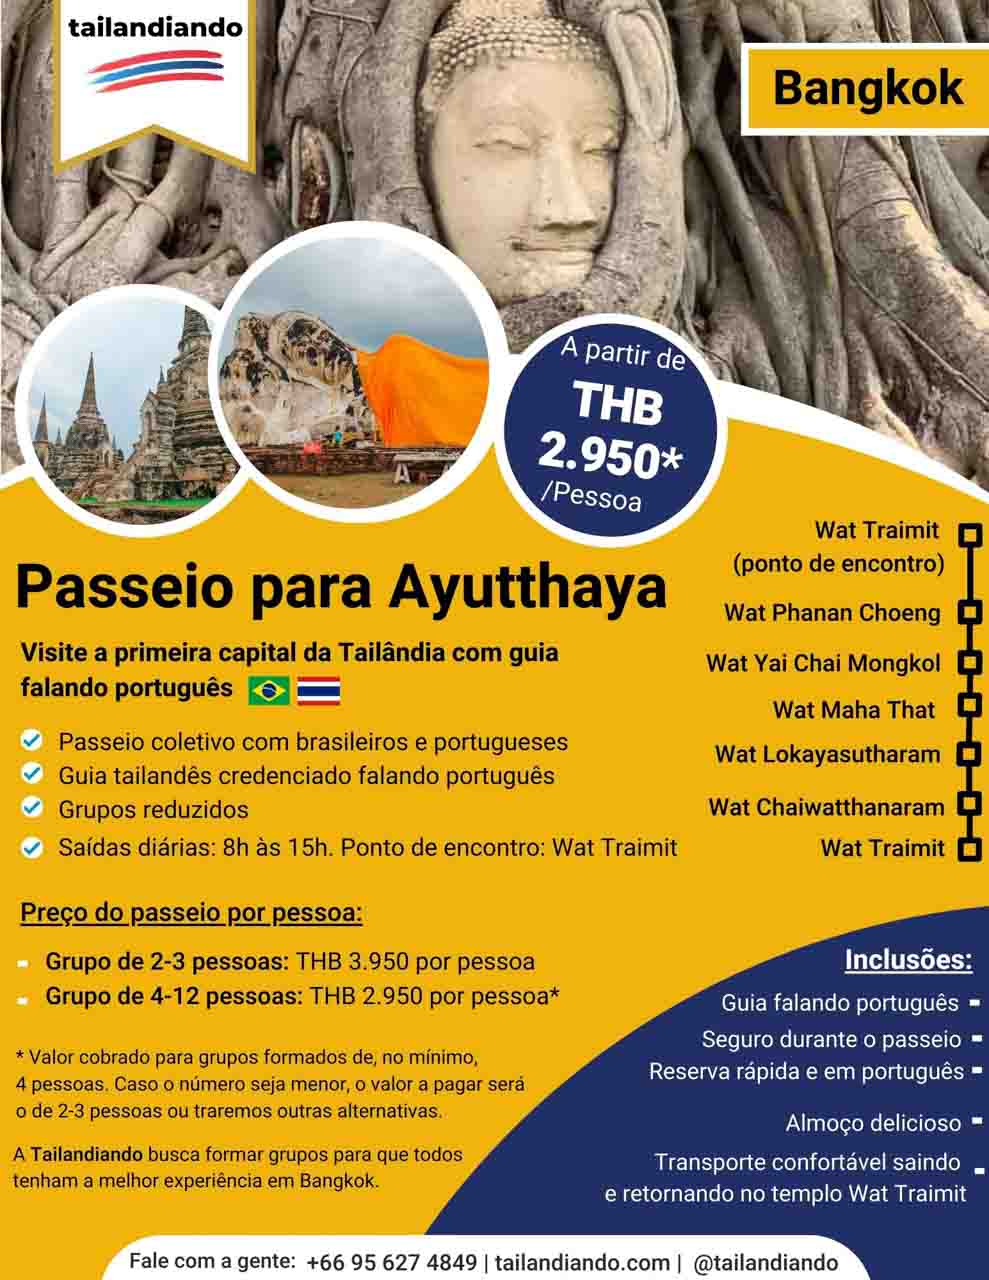 Passeio para Ayutthaya com guia em português - visite a antiga capital da Tailândia e suas ruínas de templos budistas